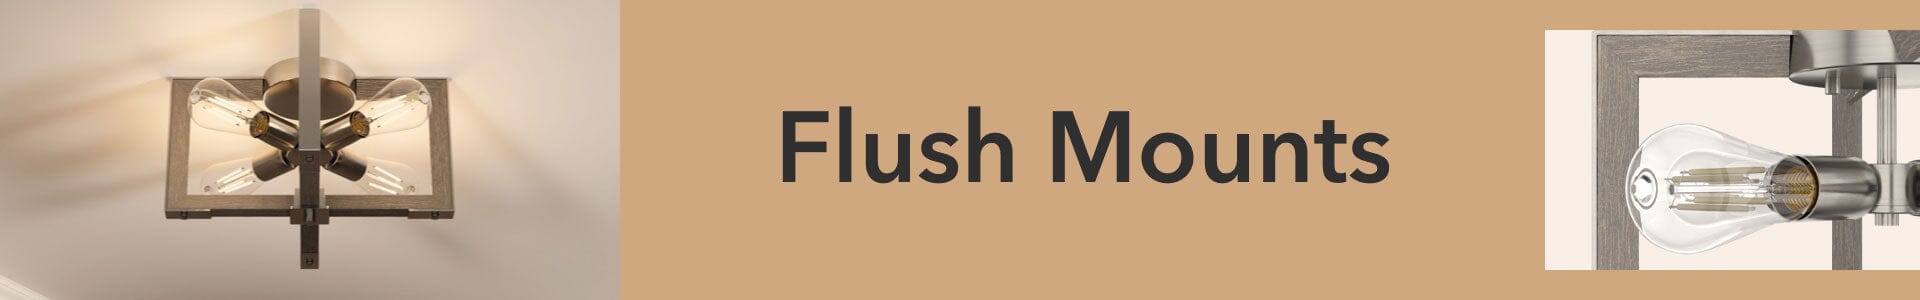 Flush Mount Lighting